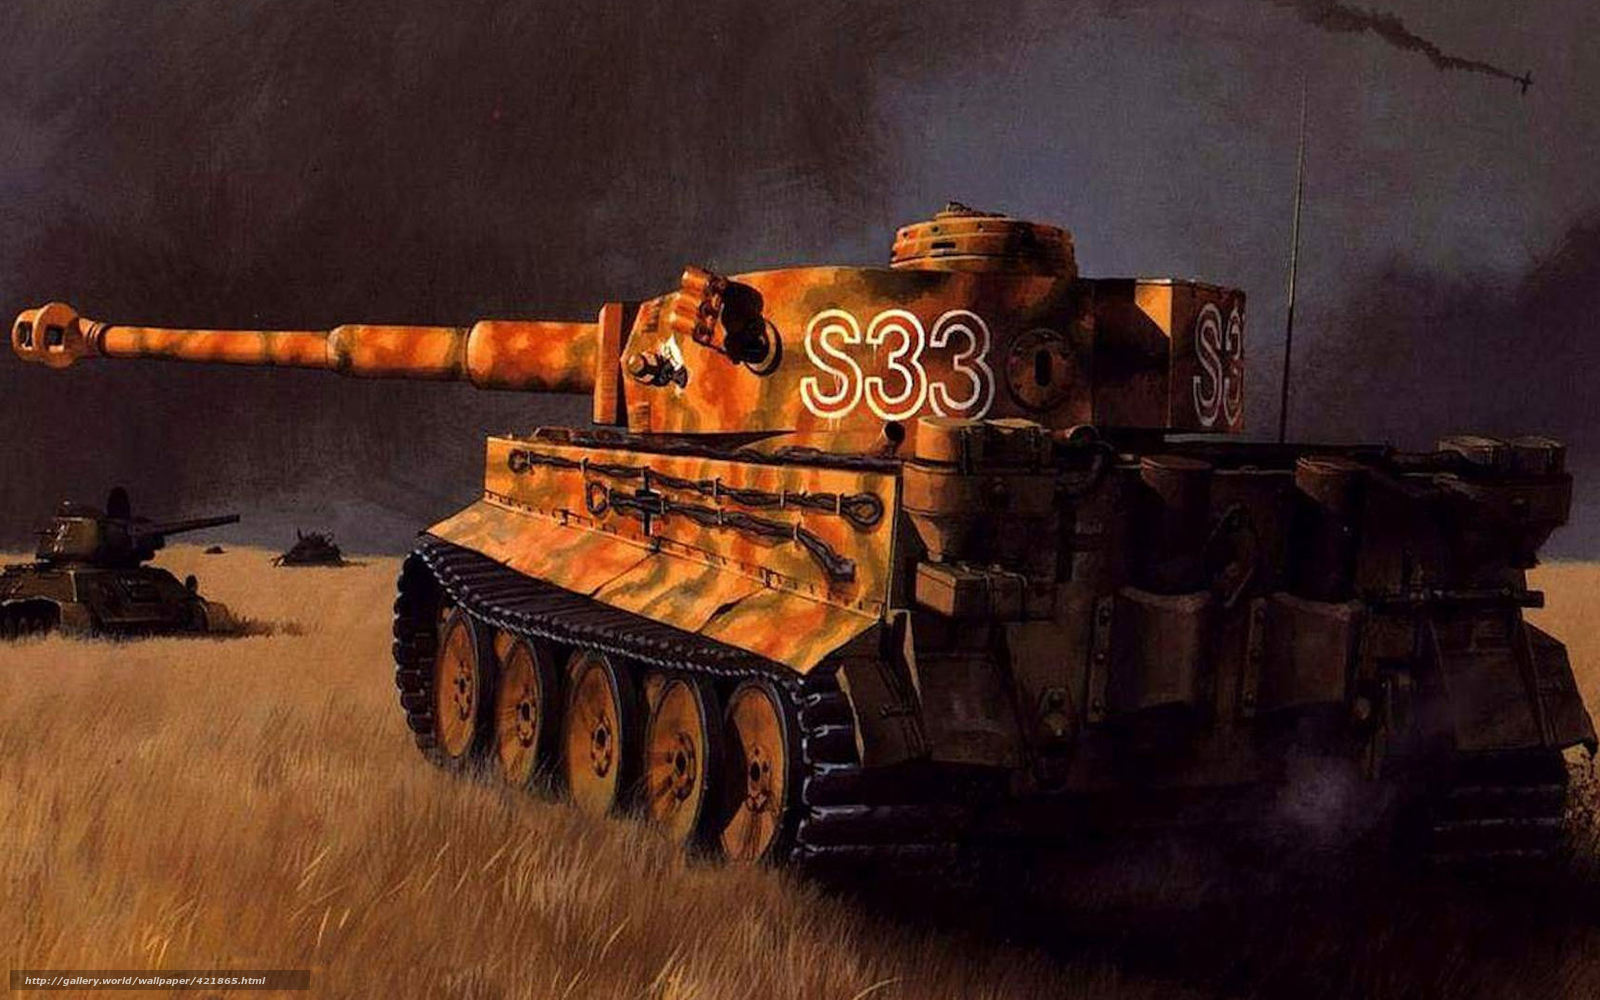 Wallpaper Tiger Tank War Field Desktop In